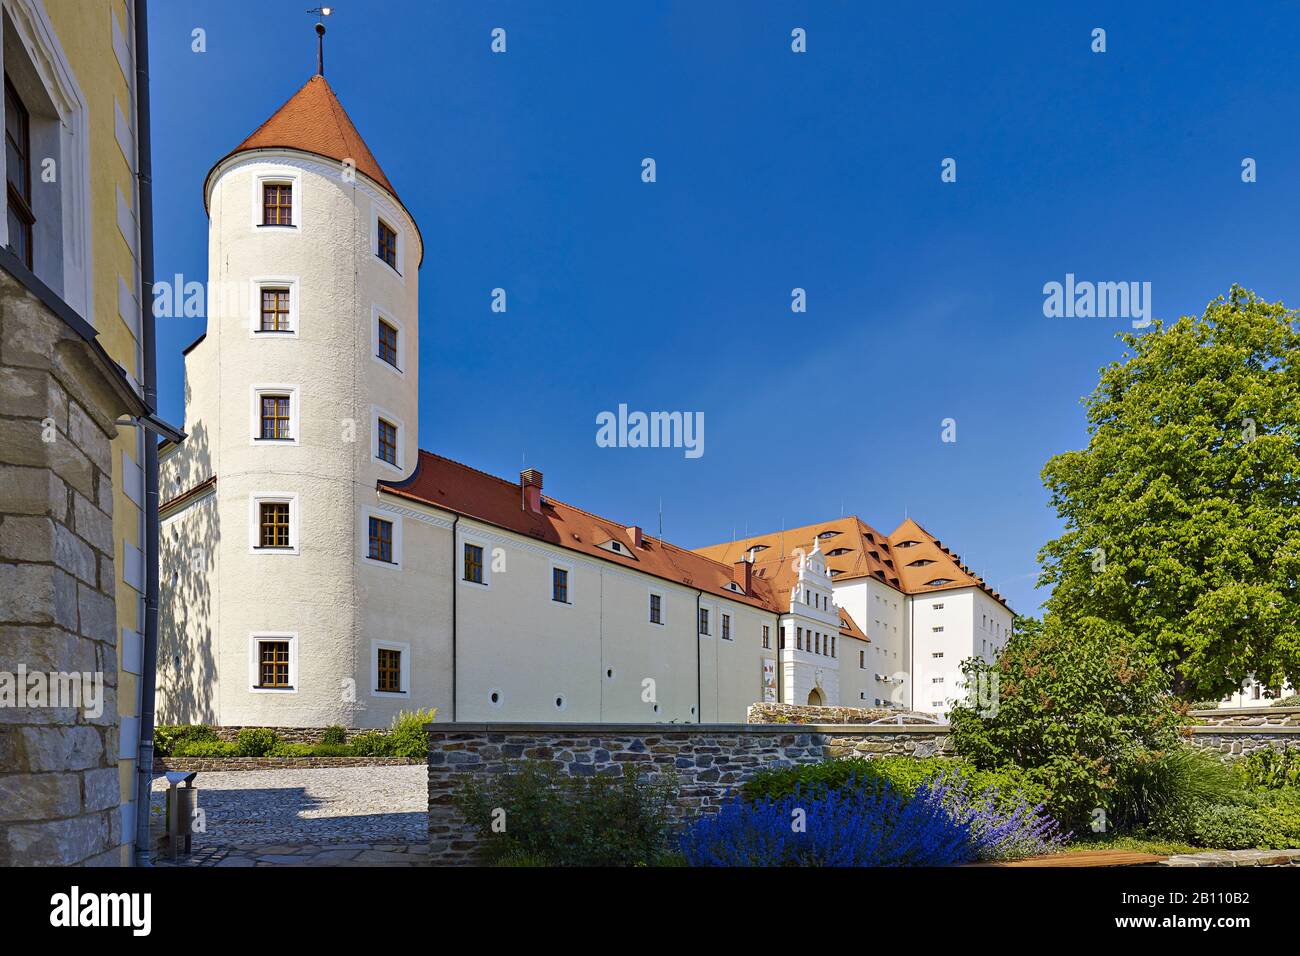 Freudenstein Castle on Schlossplatz, Freiberg, Saxony, Germany Stock Photo